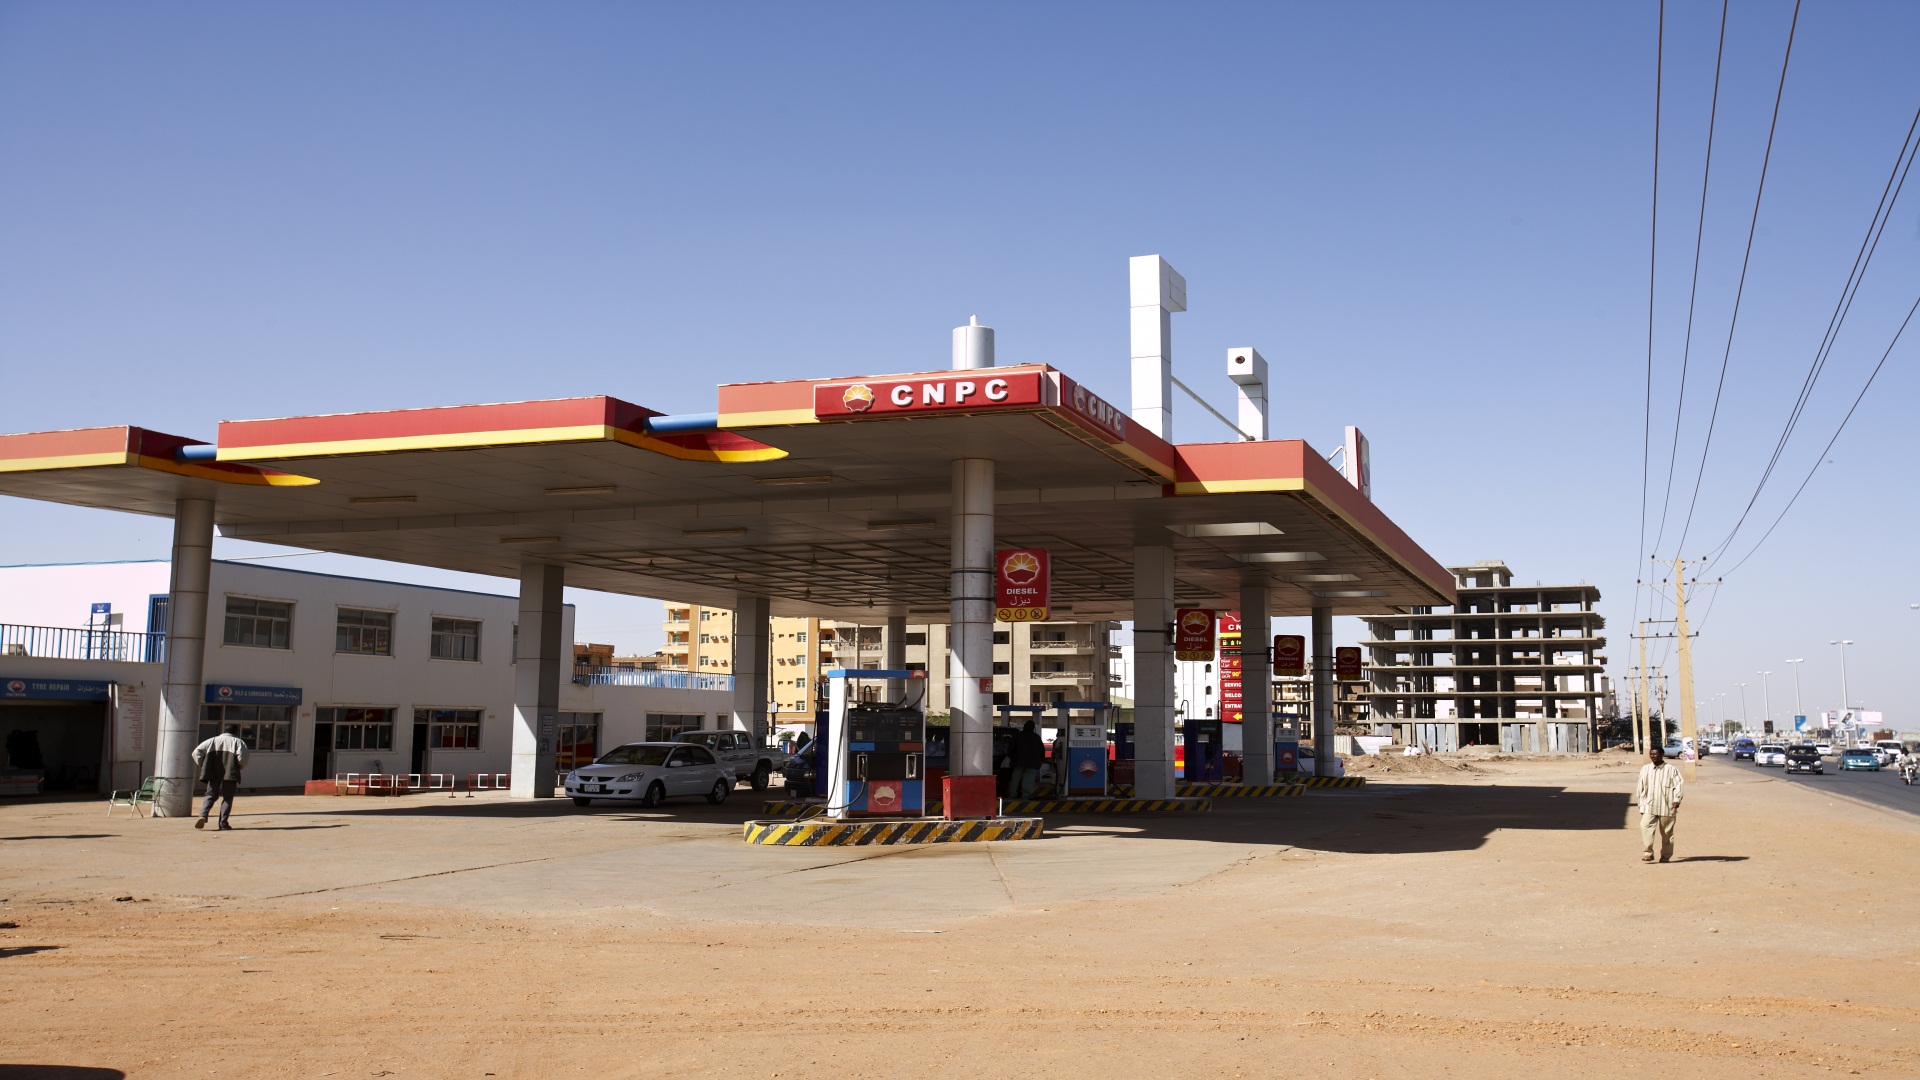 【蘇丹樣本】                     中國石油人還為蘇丹建設了許多加油站，極大地方面了當地居民的生活。                                   隱藏文字說明